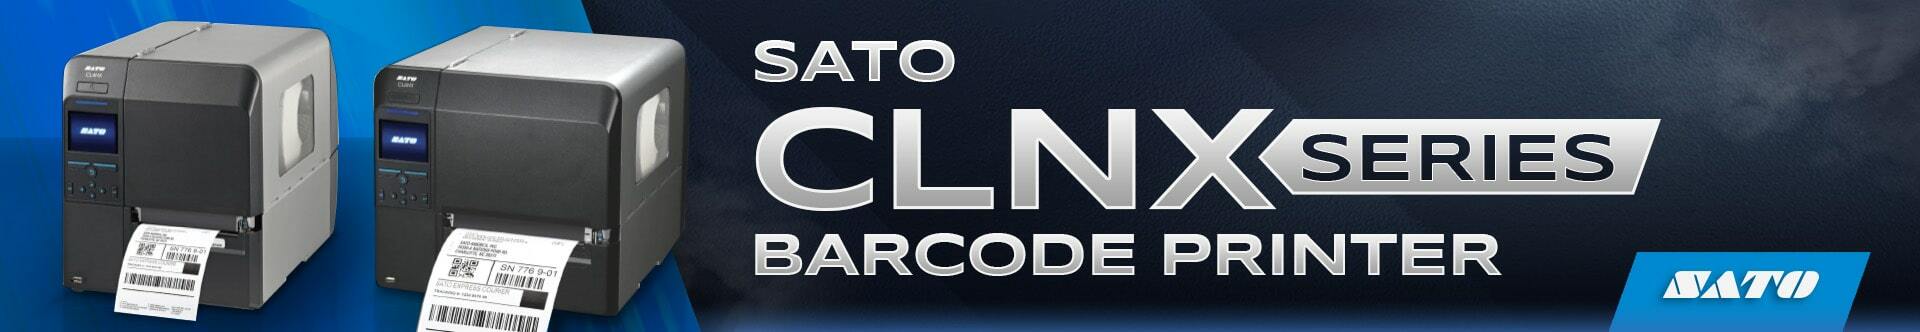 SATO CNLX Series Barcode Printers